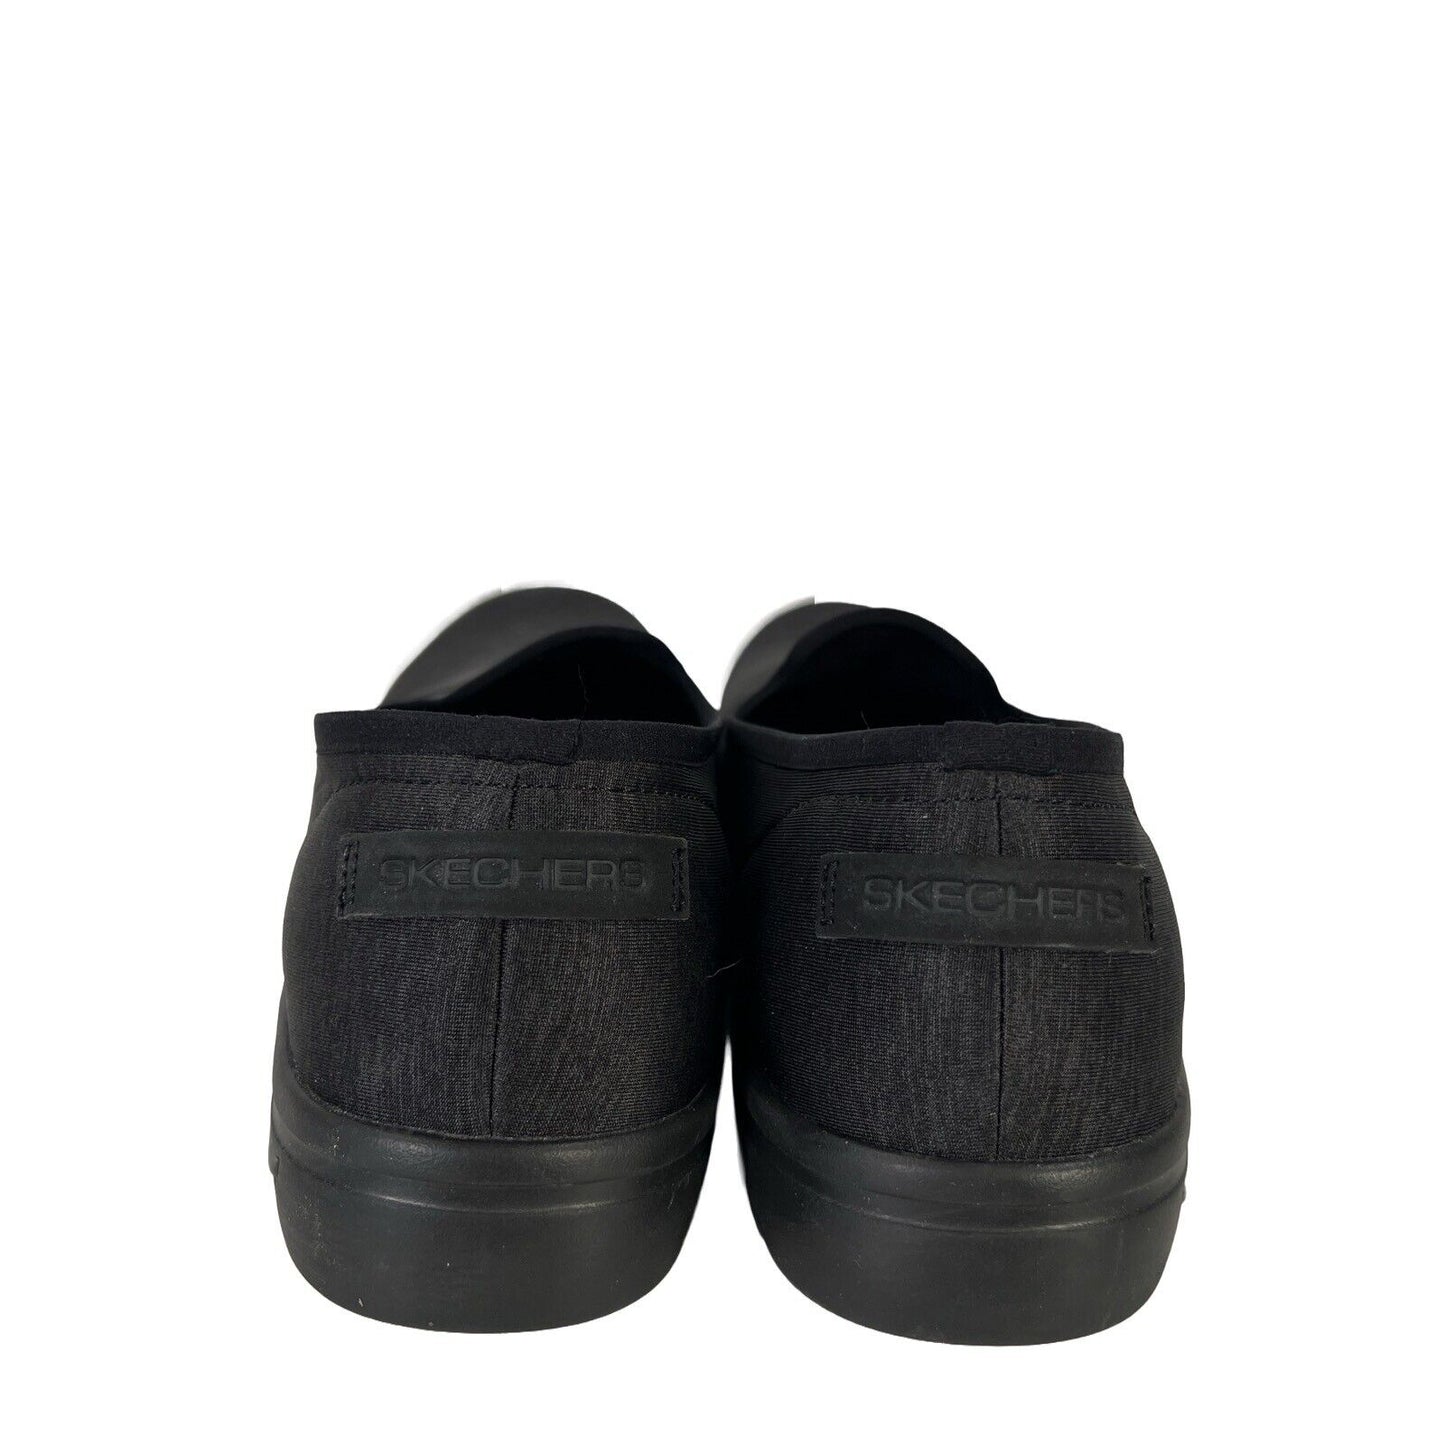 Skechers Mocasines planos sin cordones y cómodos con ajuste en arco para mujer, color negro, 9